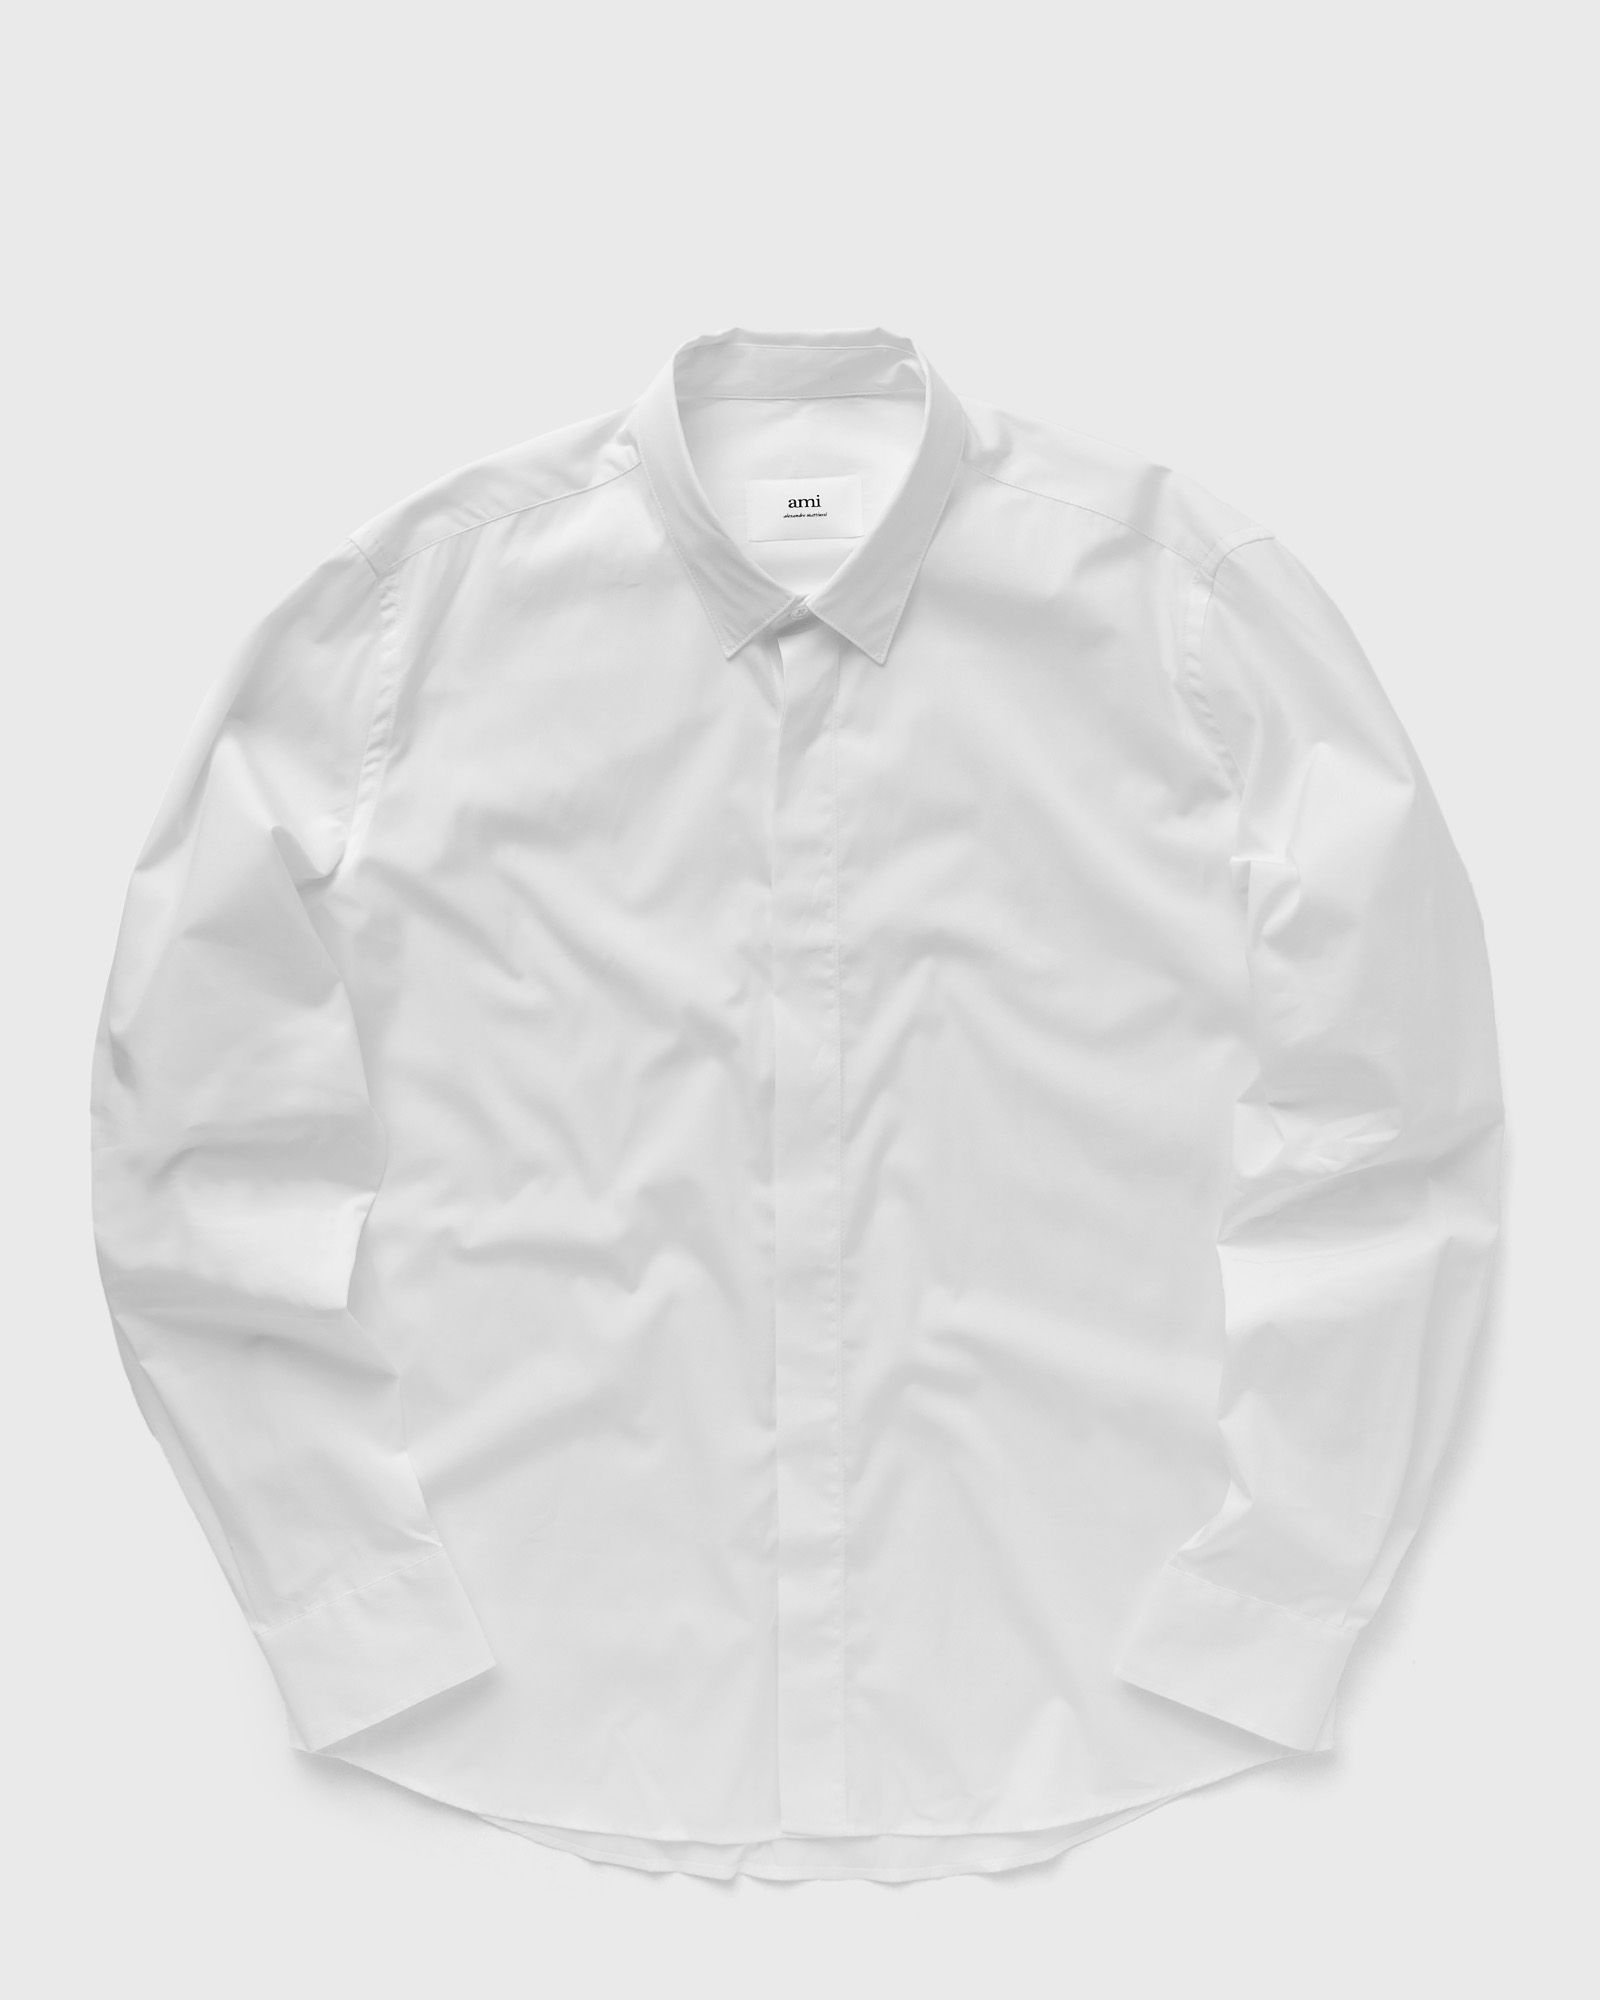 AMI Paris - tonal ami de coeur shirt men longsleeves white in größe:m